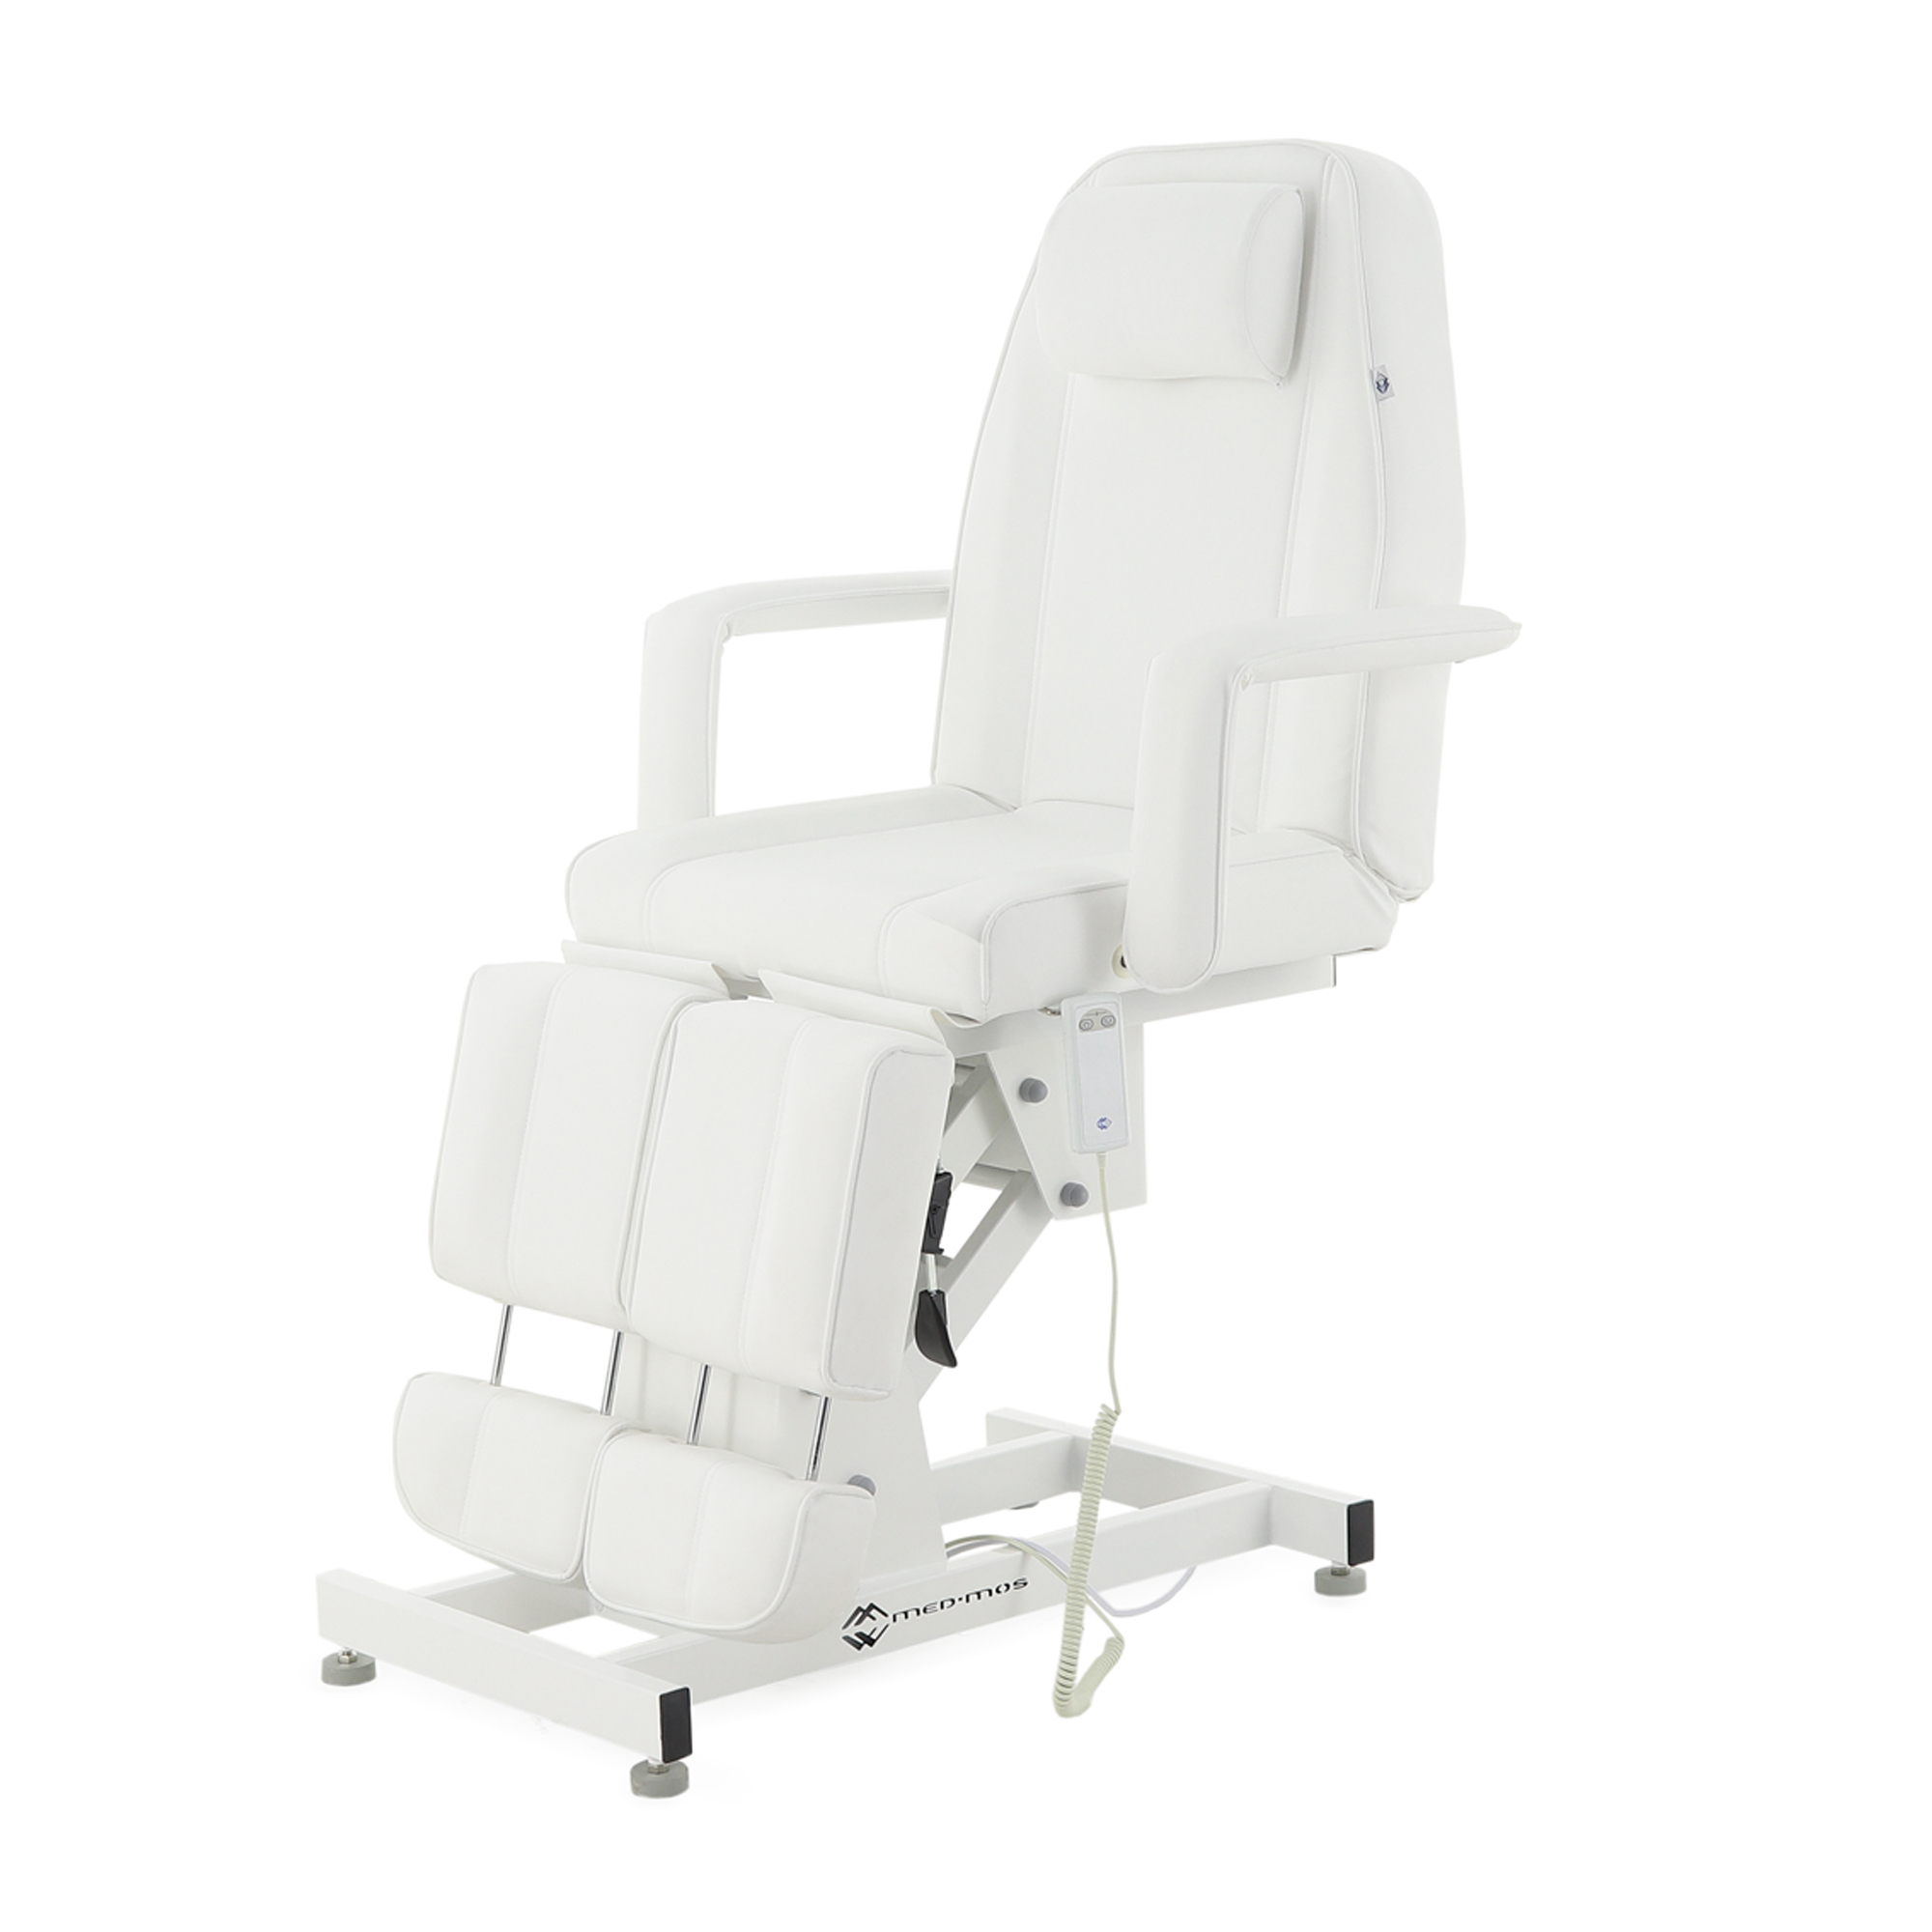 Педикюрное кресло электрическое ММКК-1 (КО-171.01) - 5 